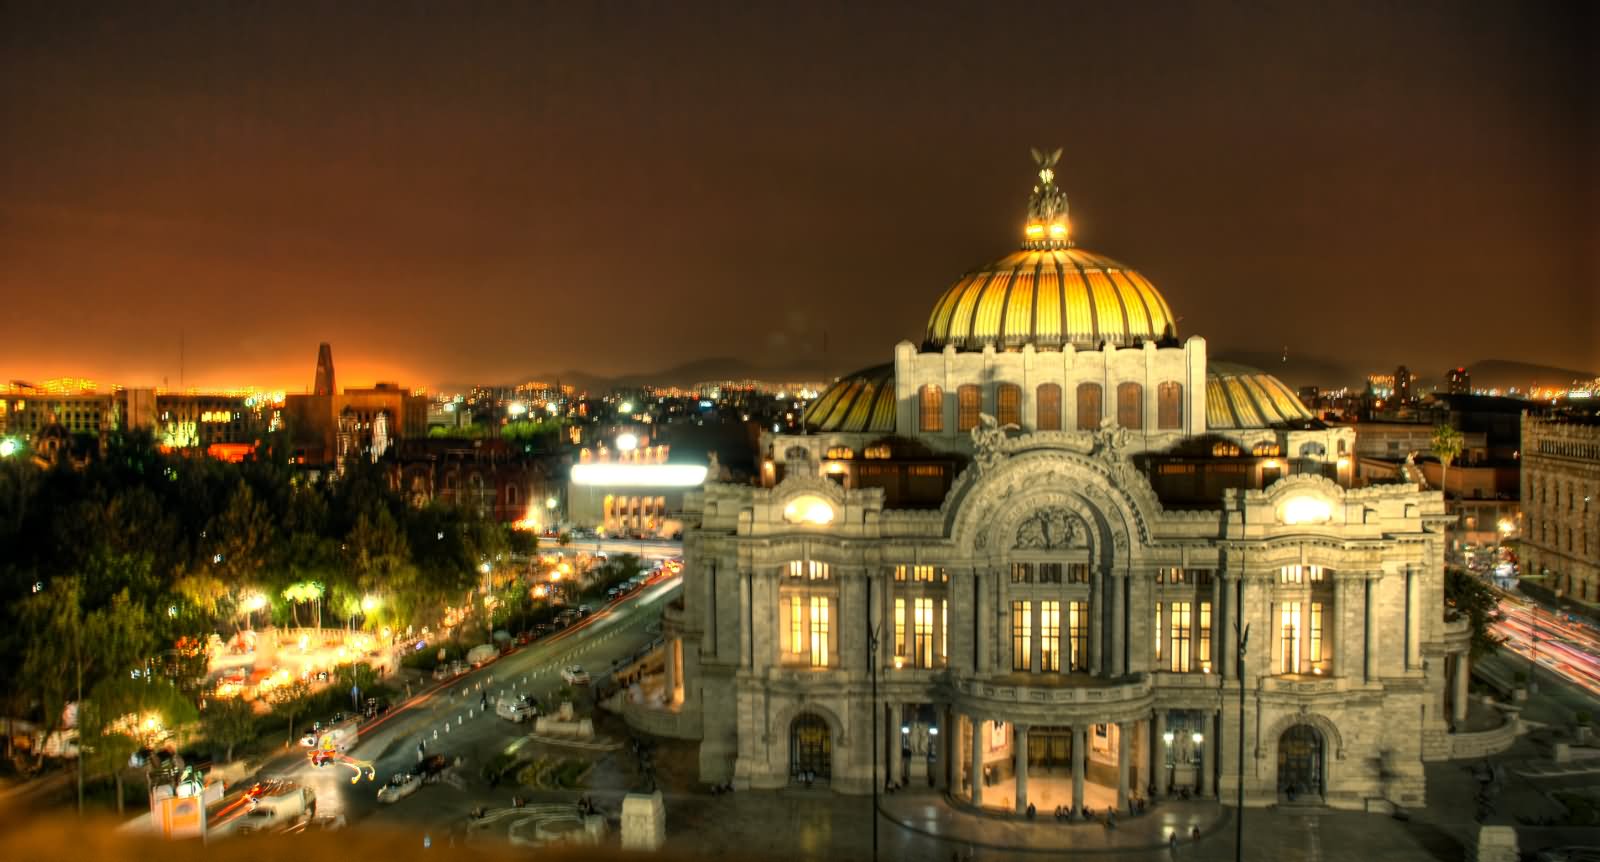 Aerial View Of The Palacio de Bellas Artes At Night